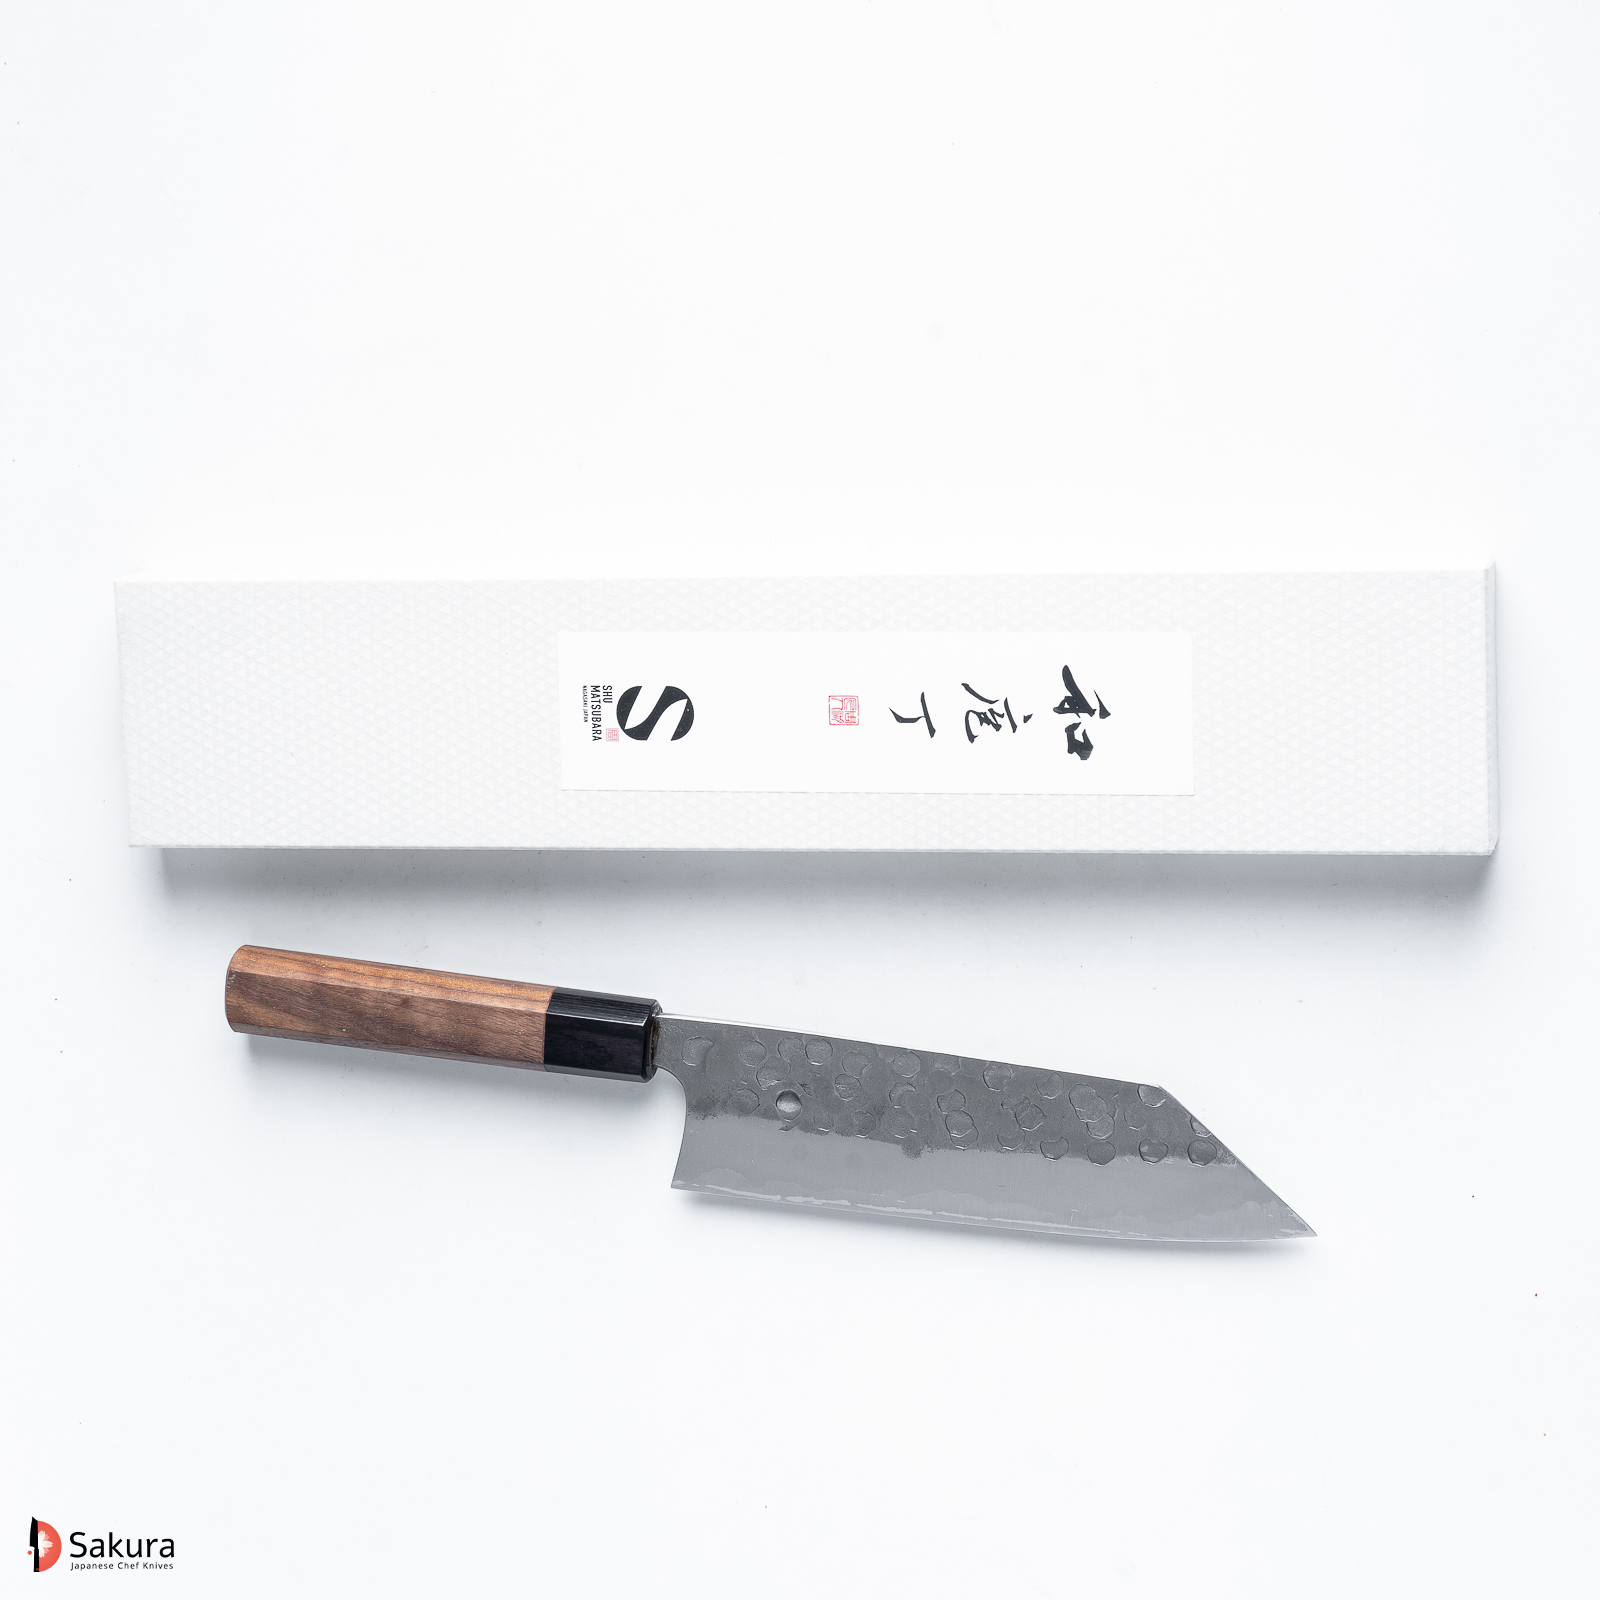 סכין רב-תכליתית בּוּנְקָה 180מ״מ פלדת Aogami #2 גימור נשיג׳י עם ריקוע פטיש מאצוברה יפן מק״ט SKMATSTKKNBHB1802242